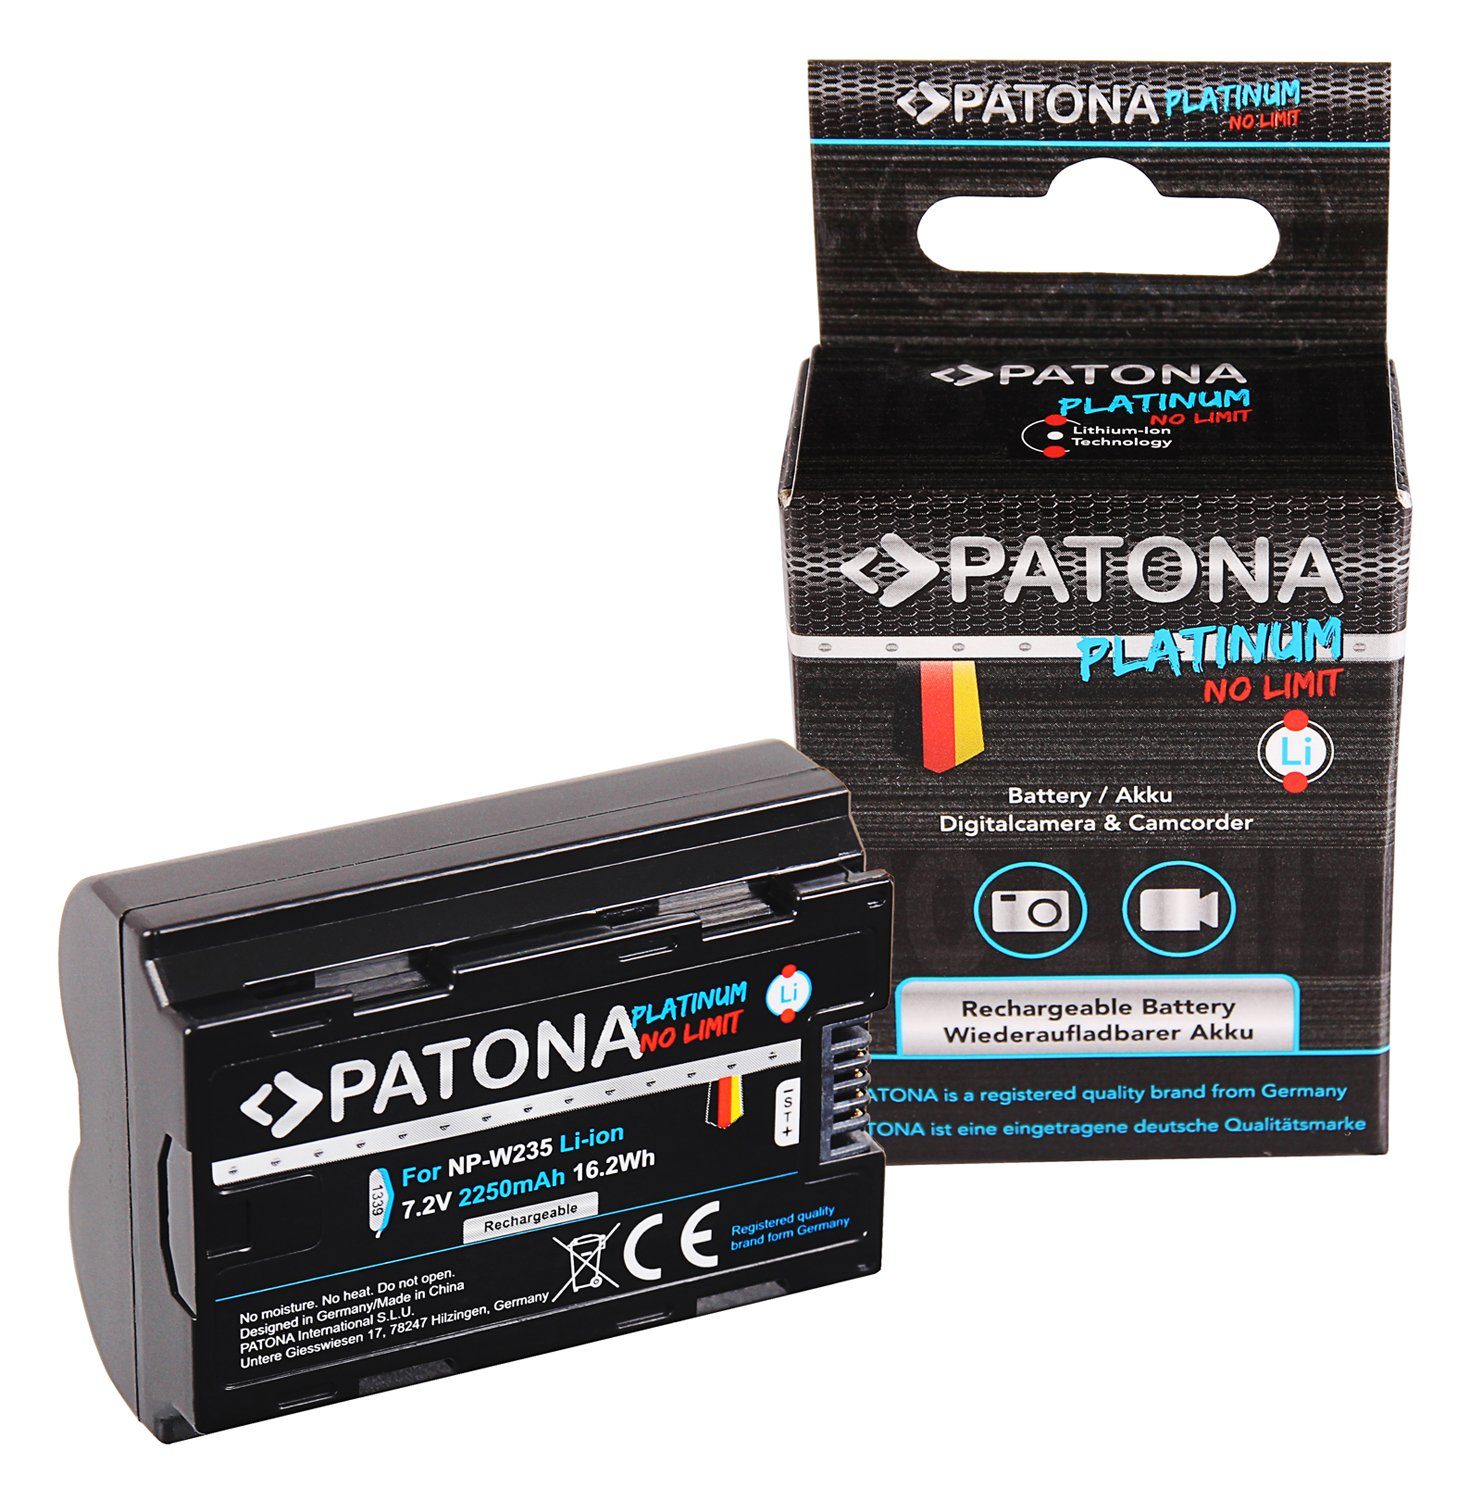 XT4 Platinum Patona die XT-4 mAh Kamera-Akku für NP-W235 Fujifilm Akku / 2250